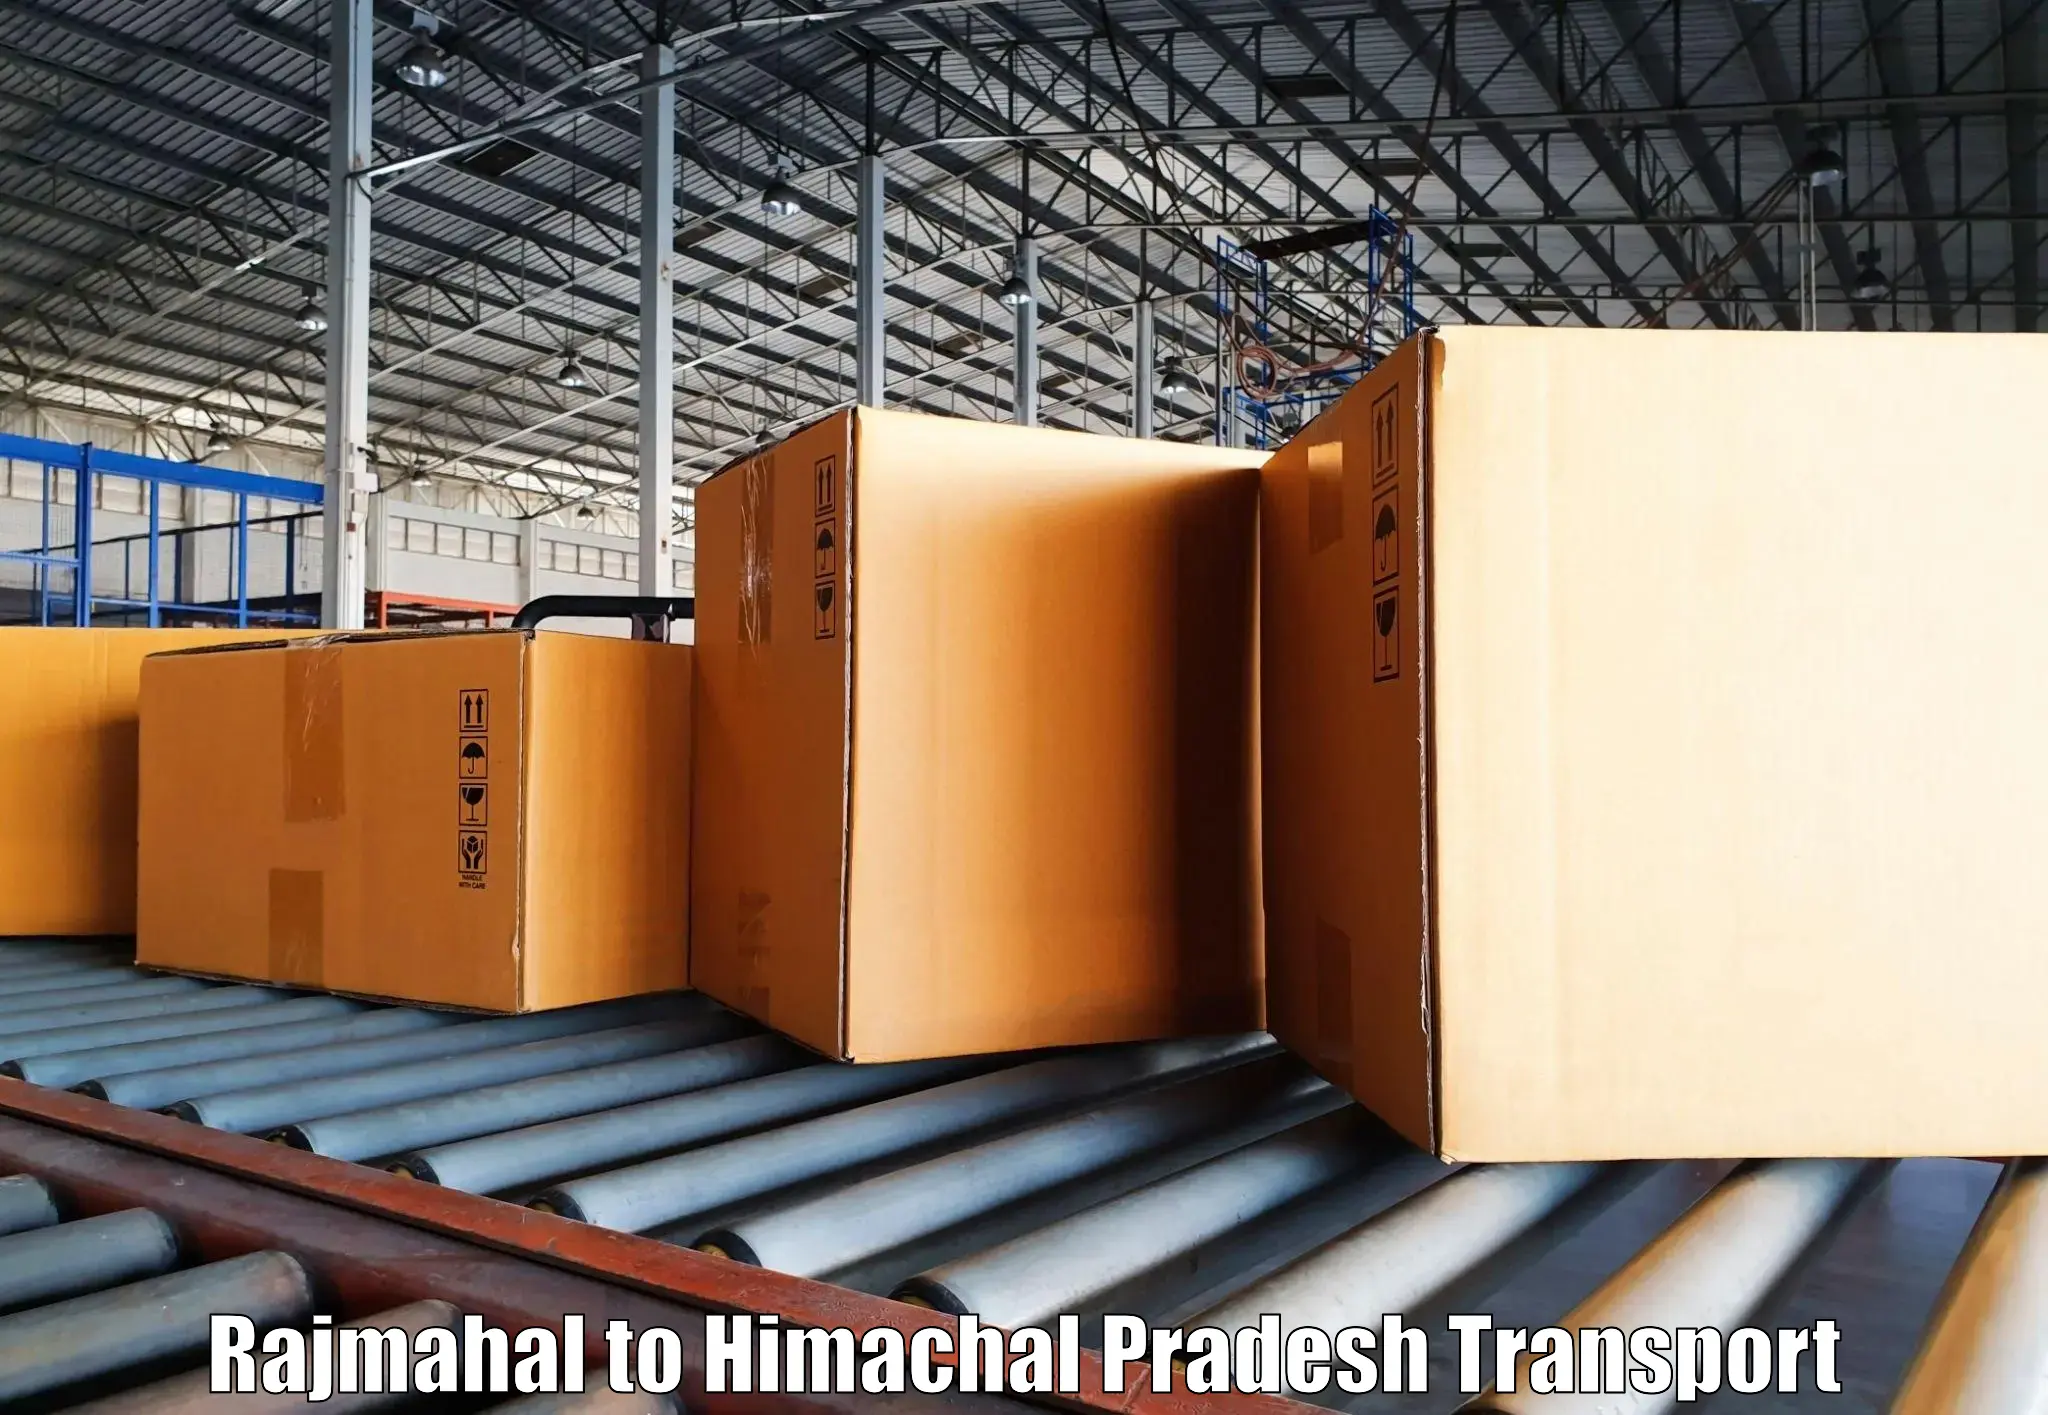 Furniture transport service Rajmahal to Haripurdhar